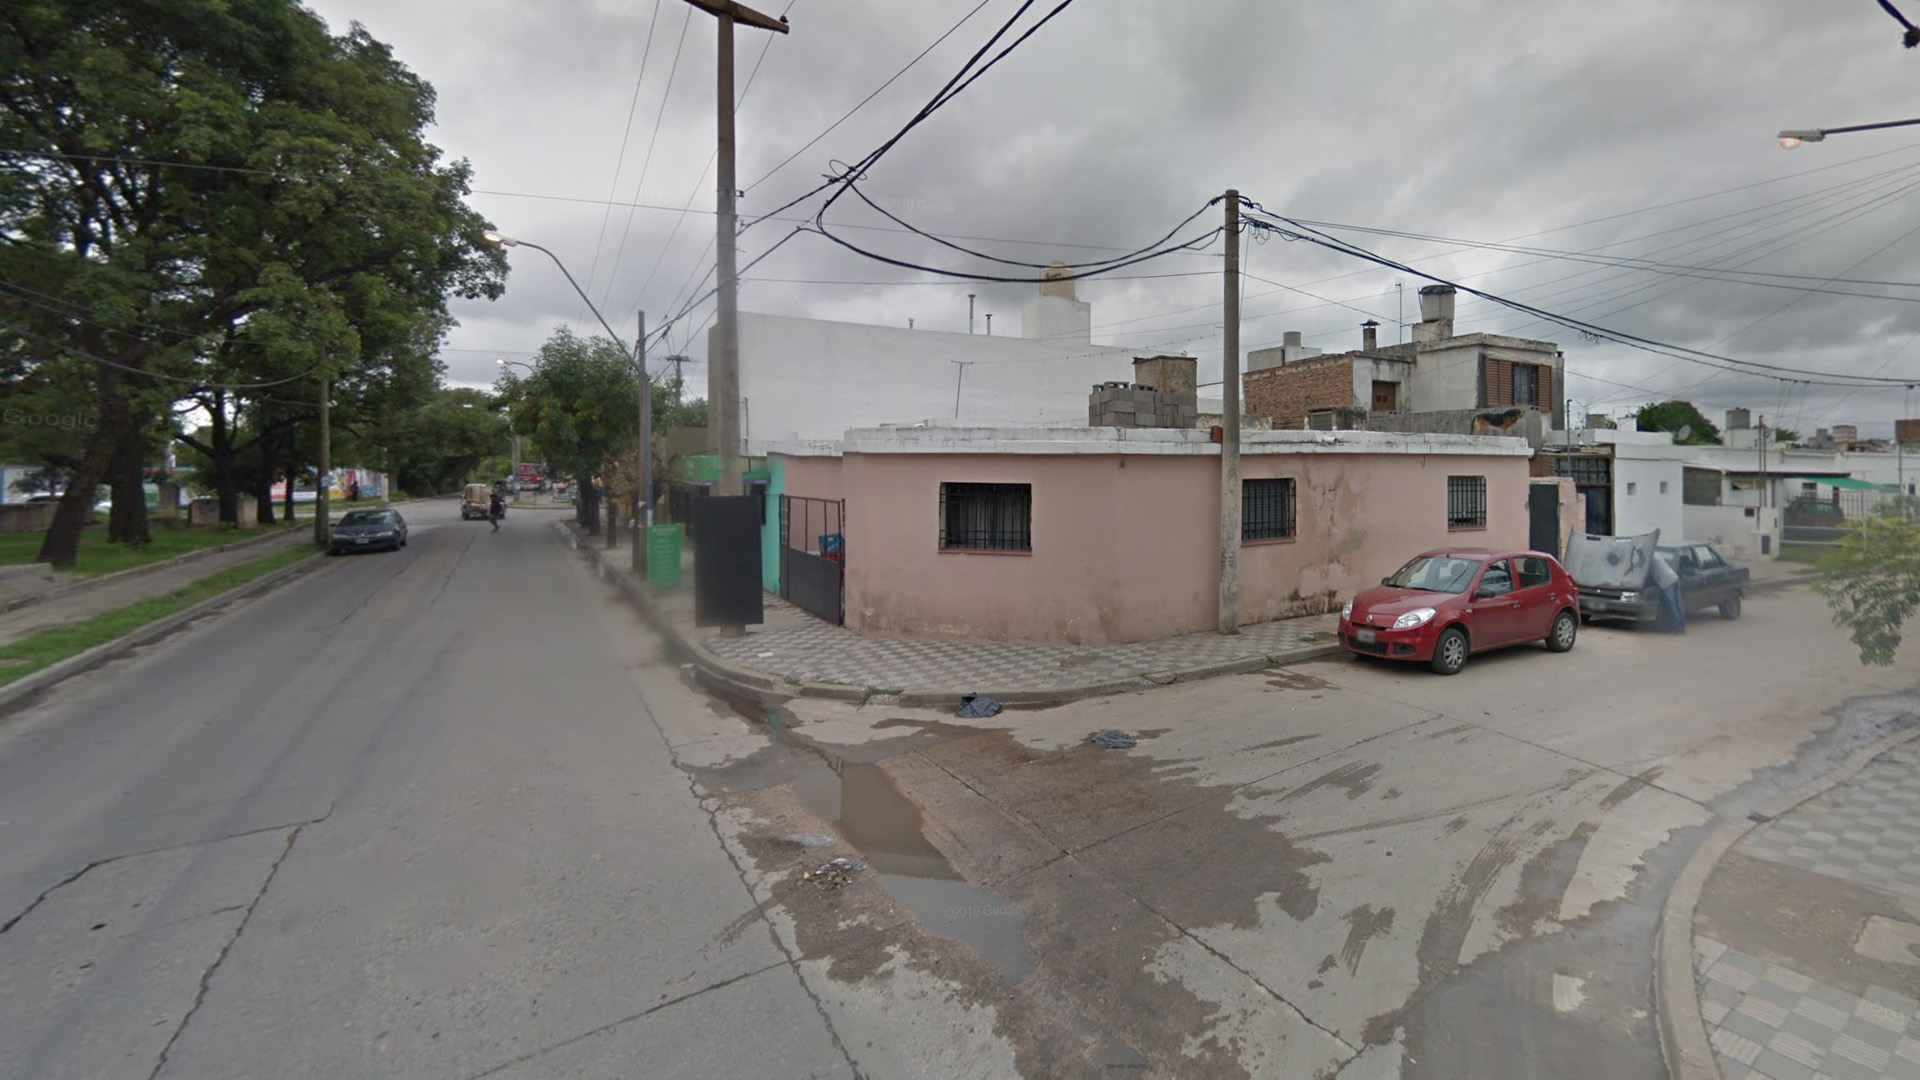 Los cuerpos fueron encontrados en un domicilio de la calle José María Cantilo al 300, ubicado en el barrio San Fernando al Sur de la Ciudad de Córdoba